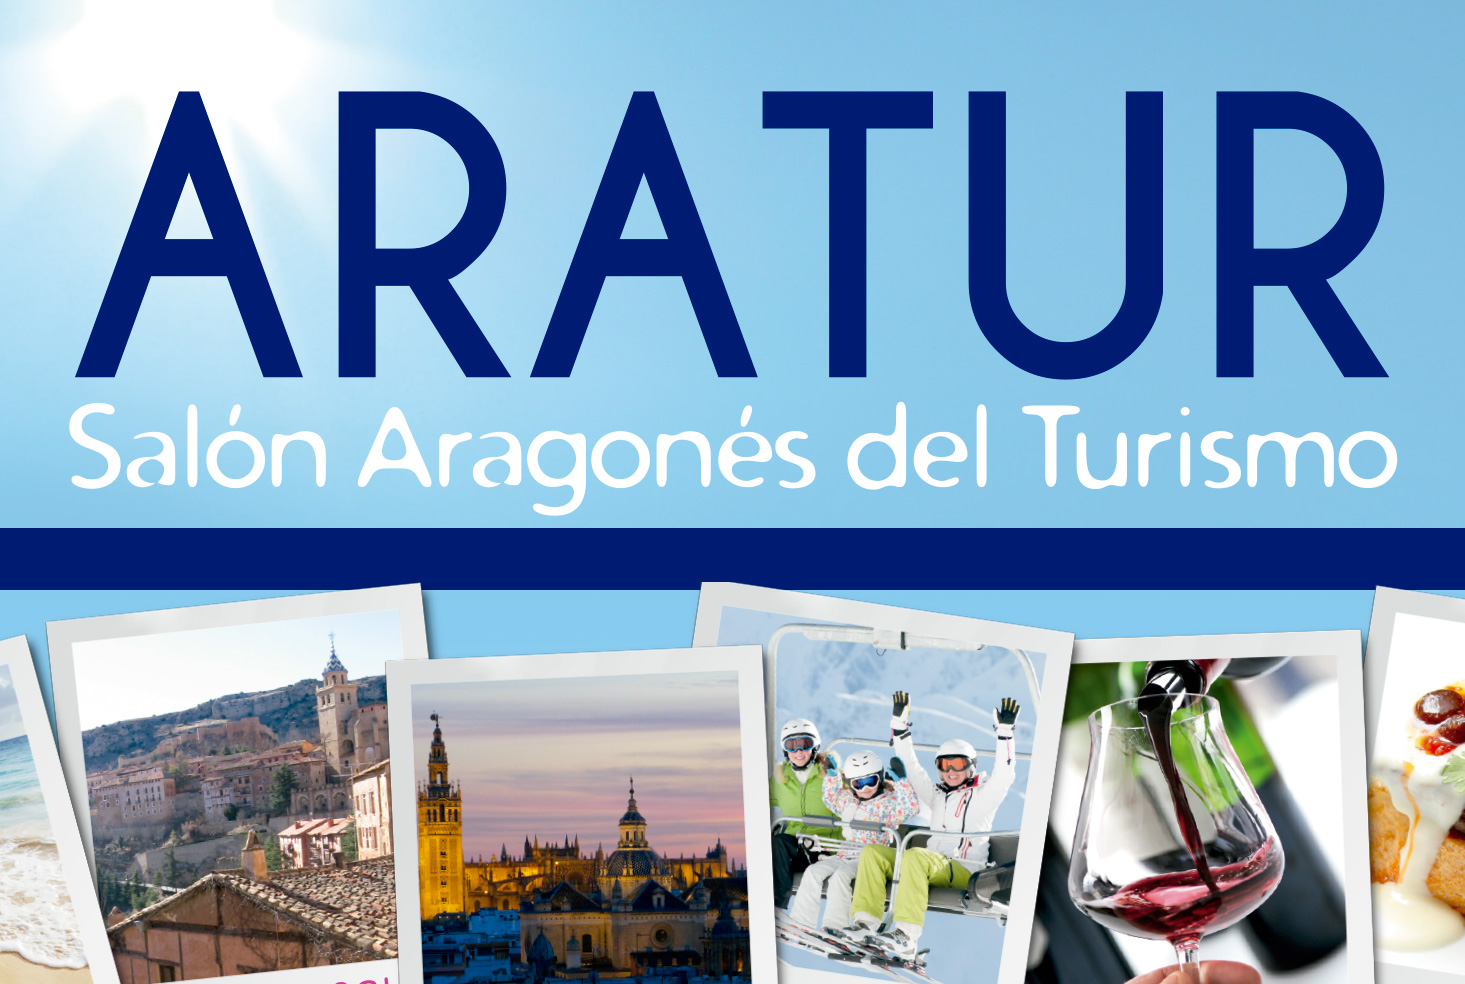 ARATUR, el Salon Aragones del Turismo, del 13 al 15 de mayo en el Palacio de Congresos, ofrece de manera gratuita alternativas para todos los gustos 